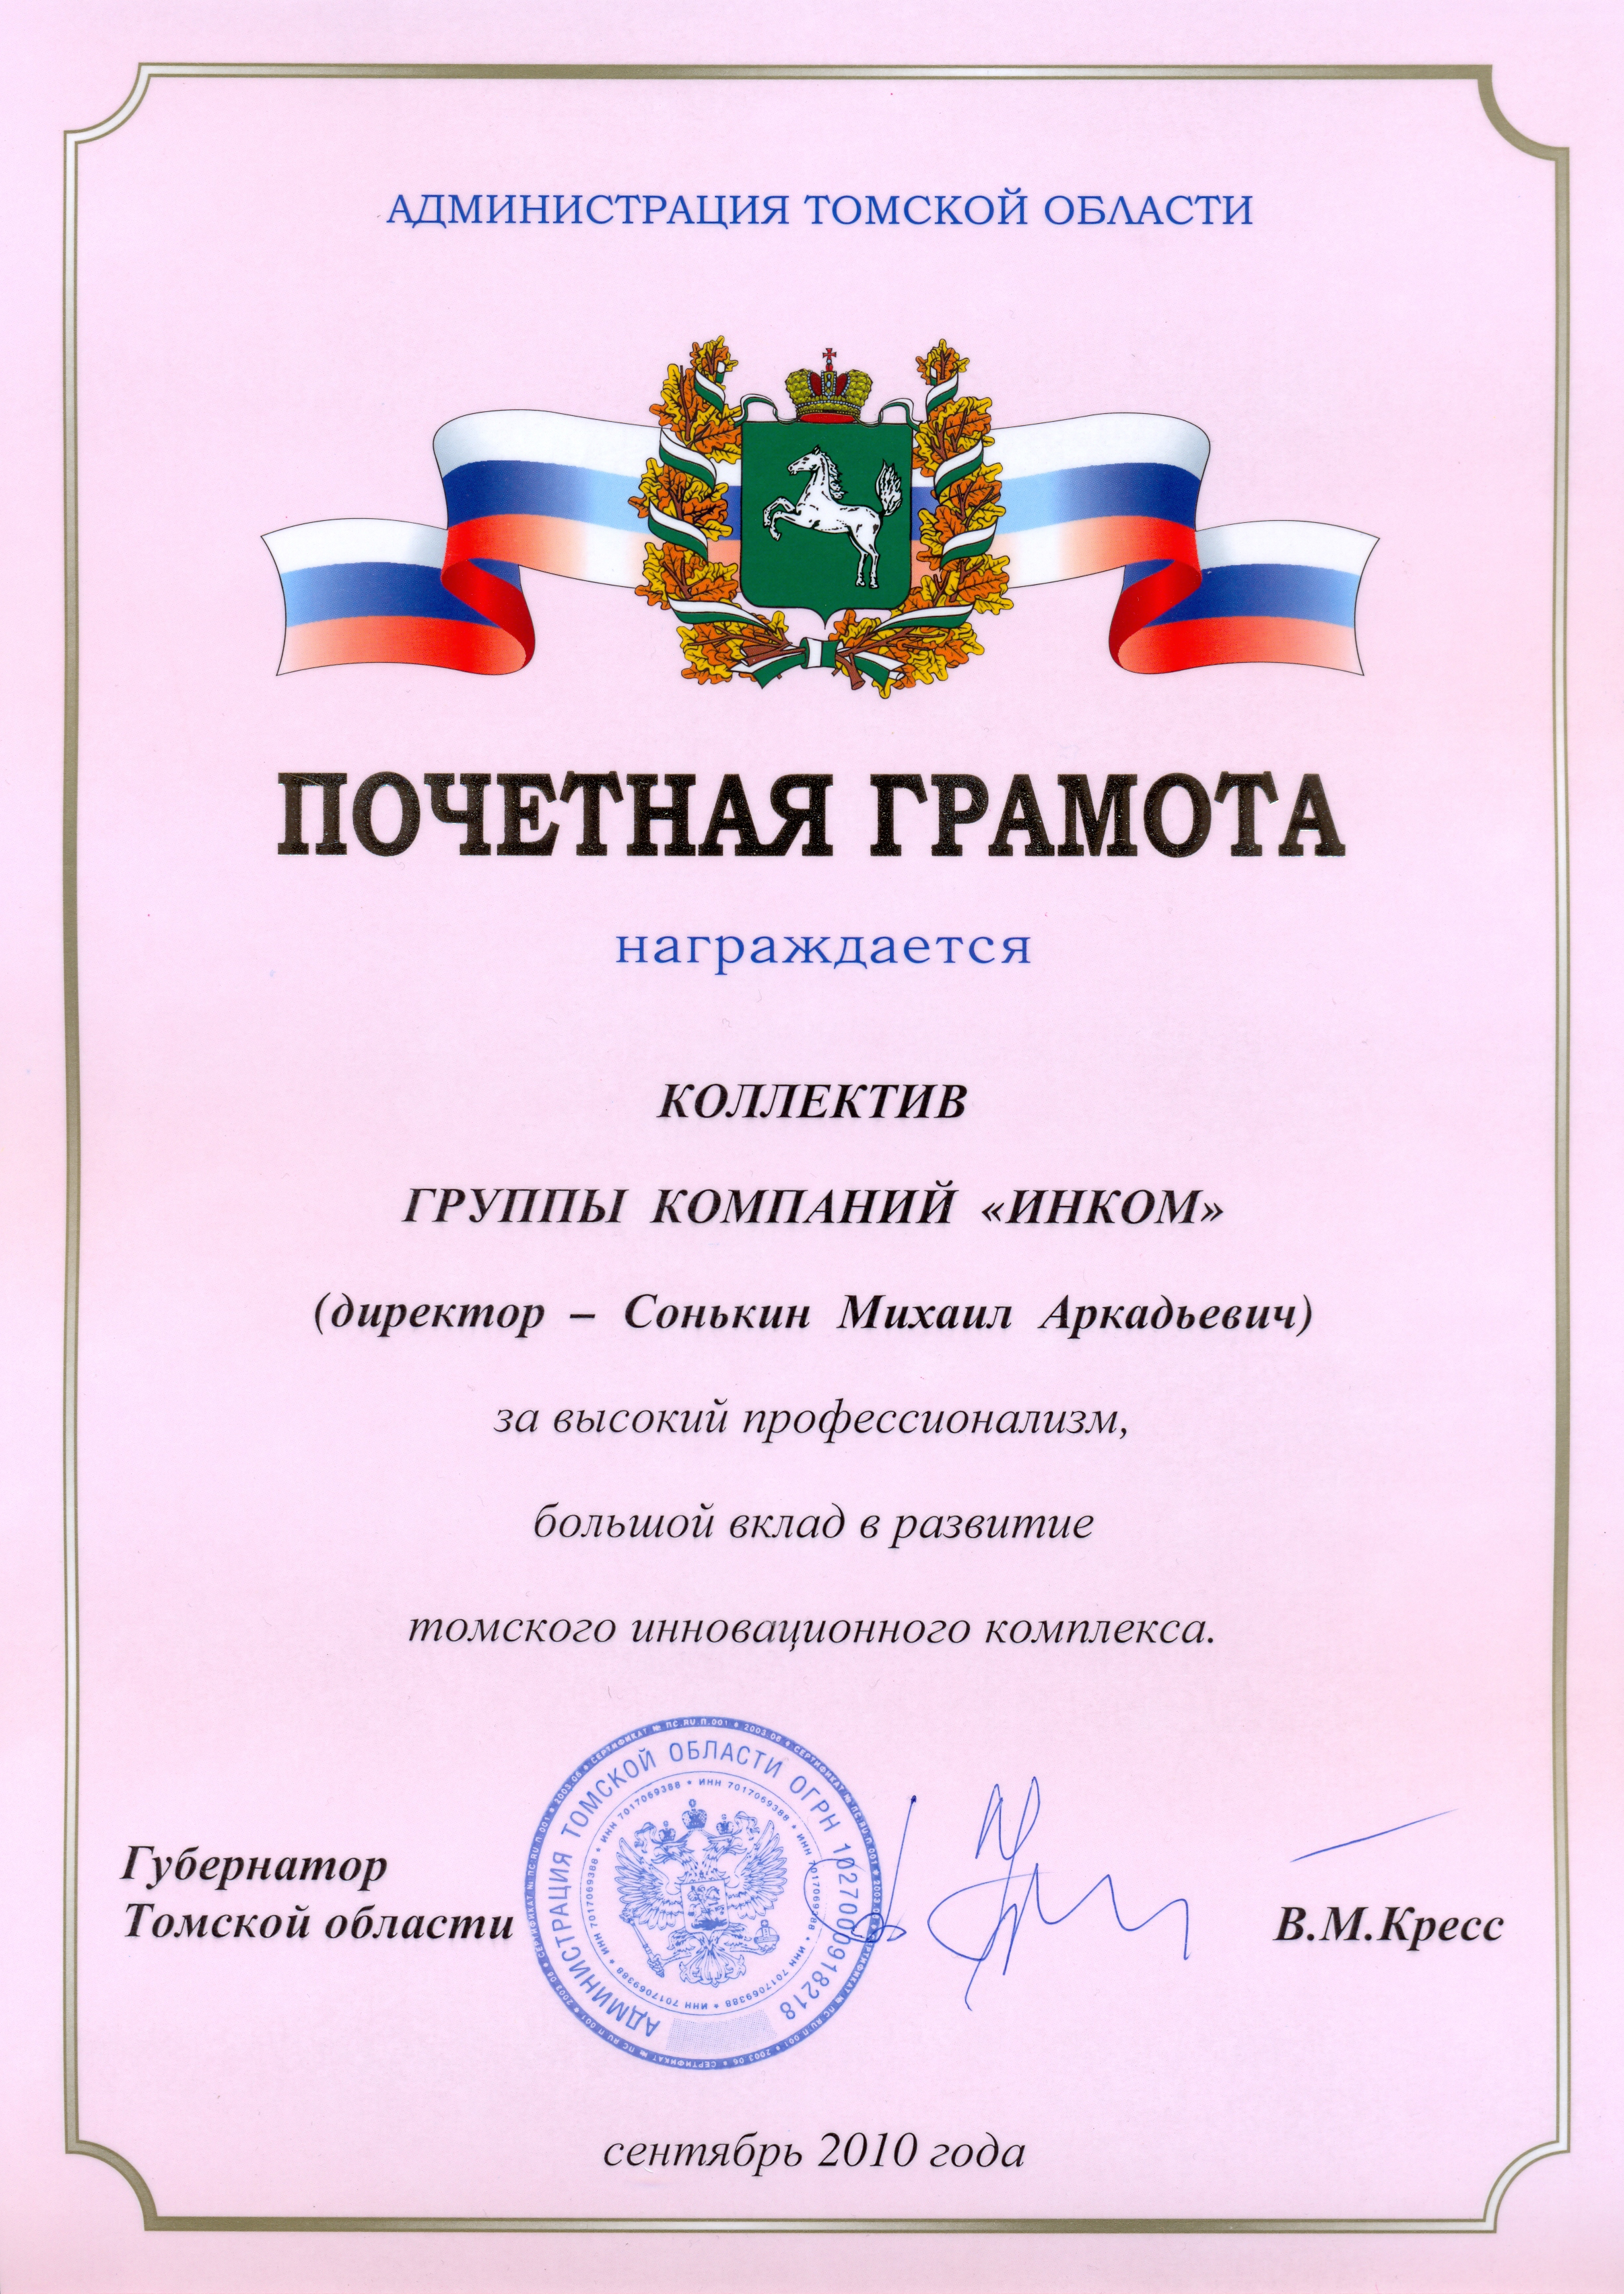 Почетная грамота Администрации Томской области